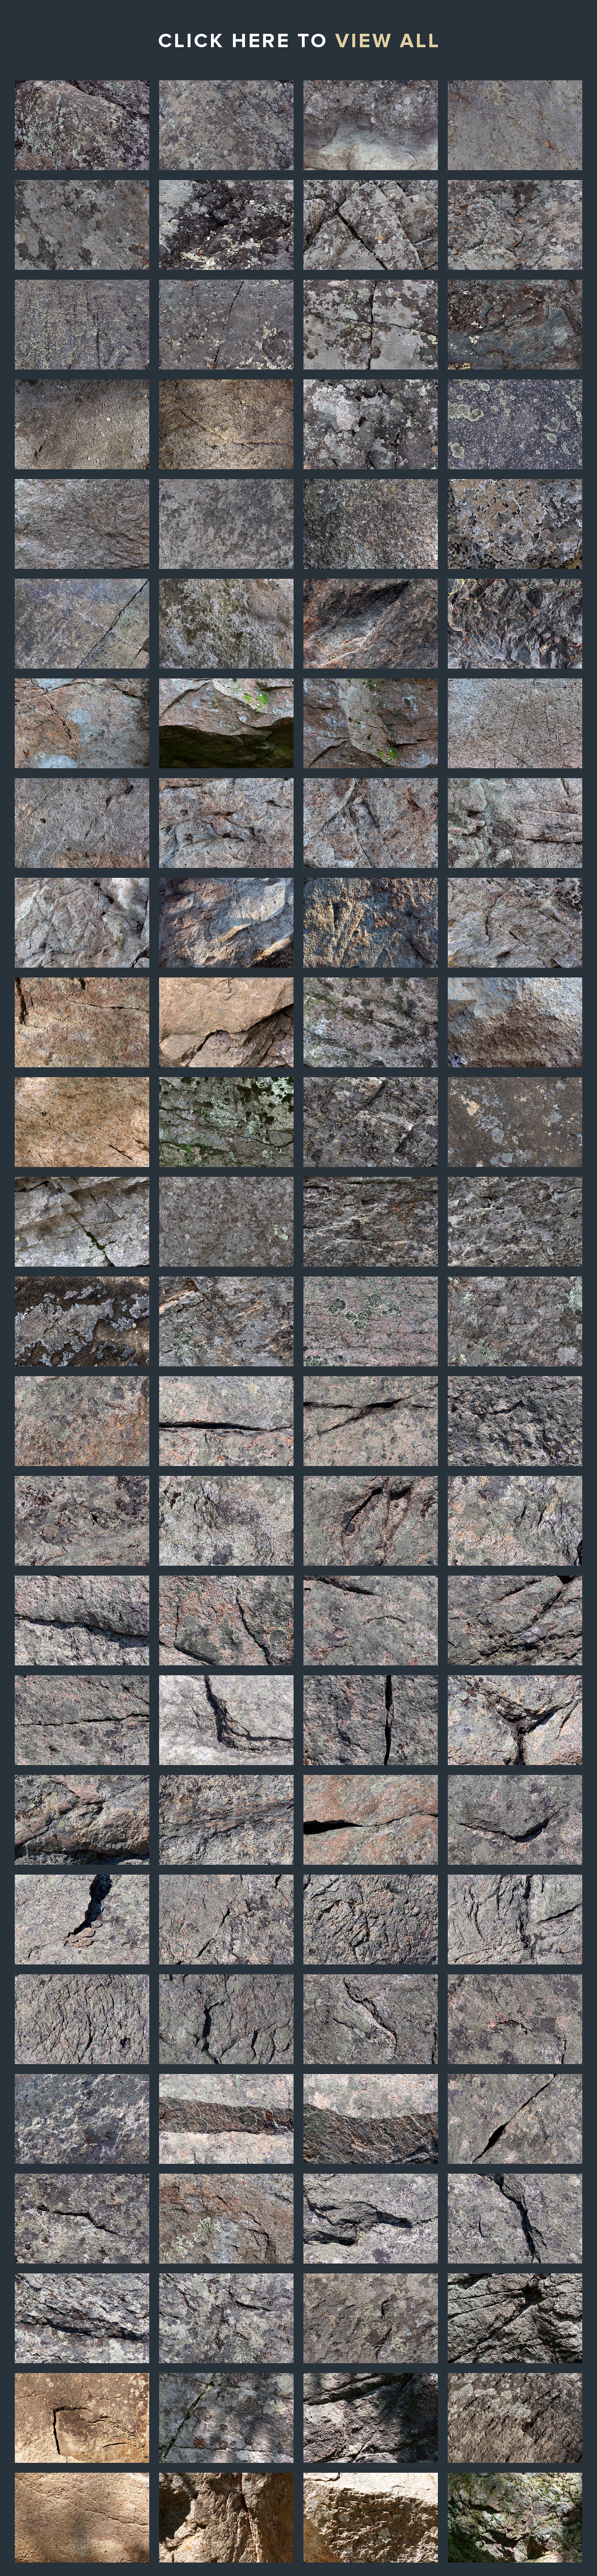 100个高分辨率的大规模束&岩石纹理 100 Rock Photo Textures插图1